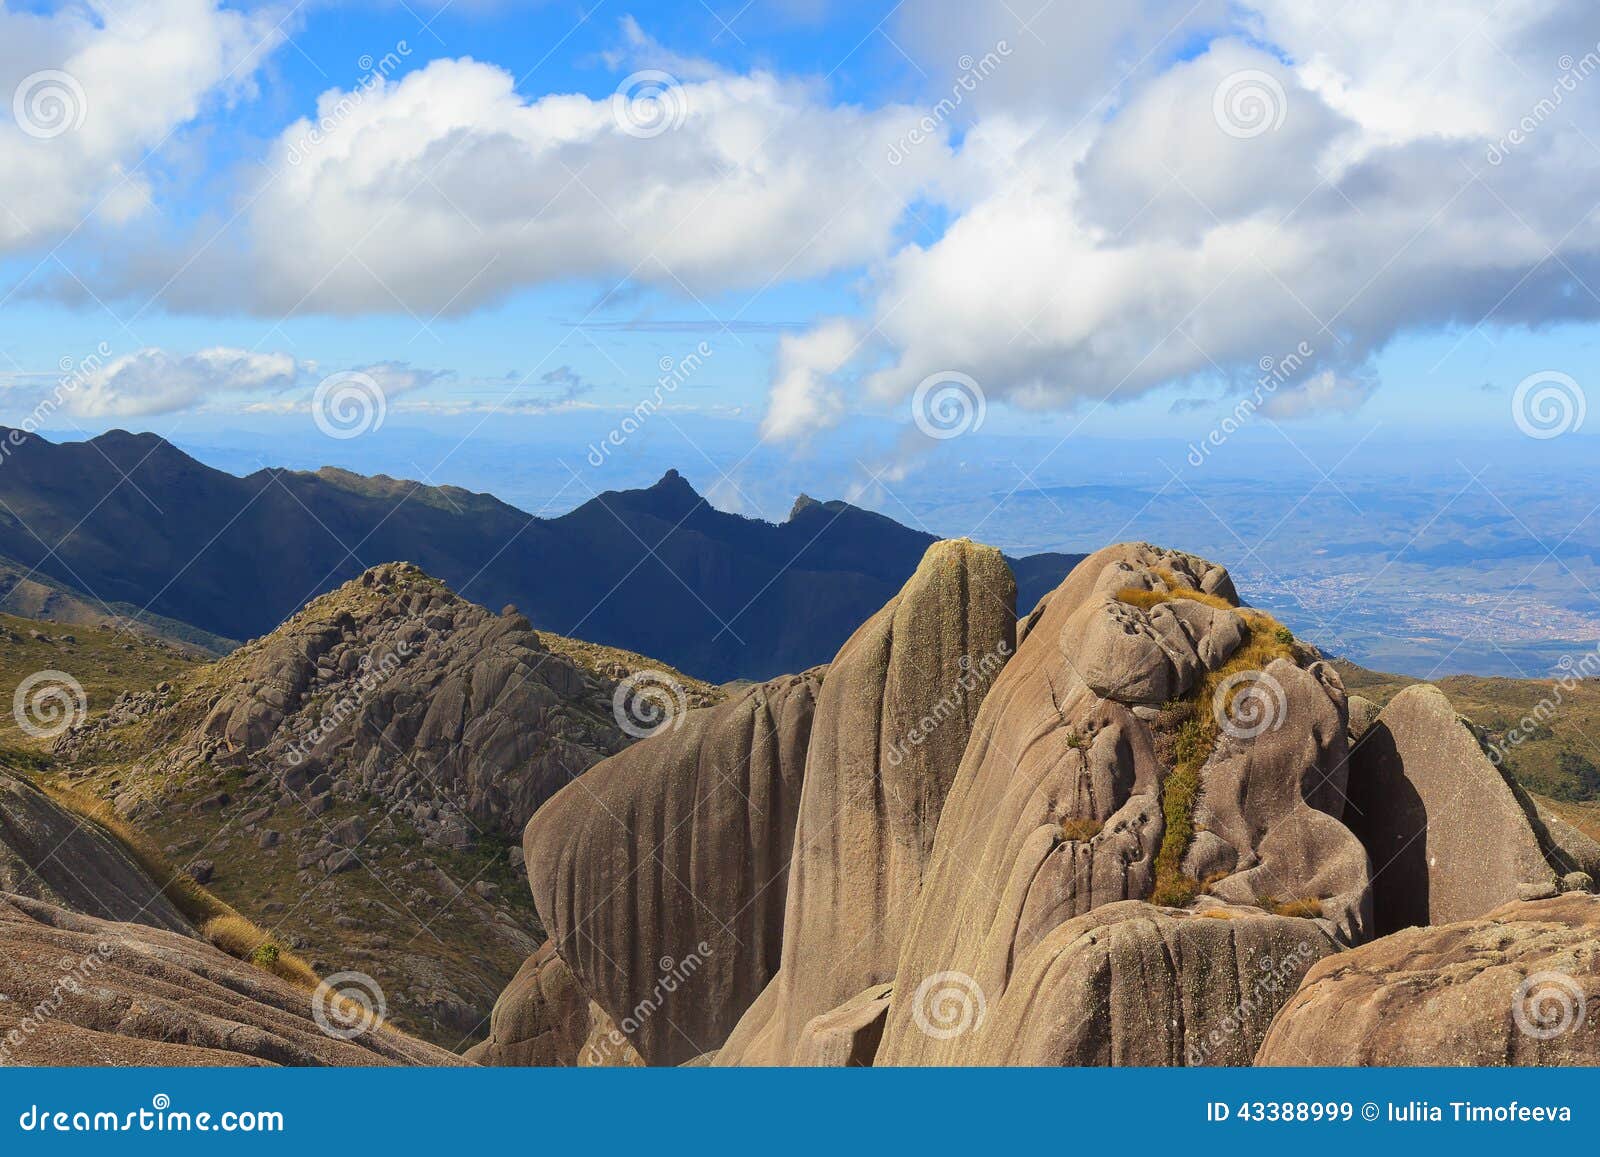 Peak Mountain Prateleiras in Itatiaia National Park, Brazil Stock